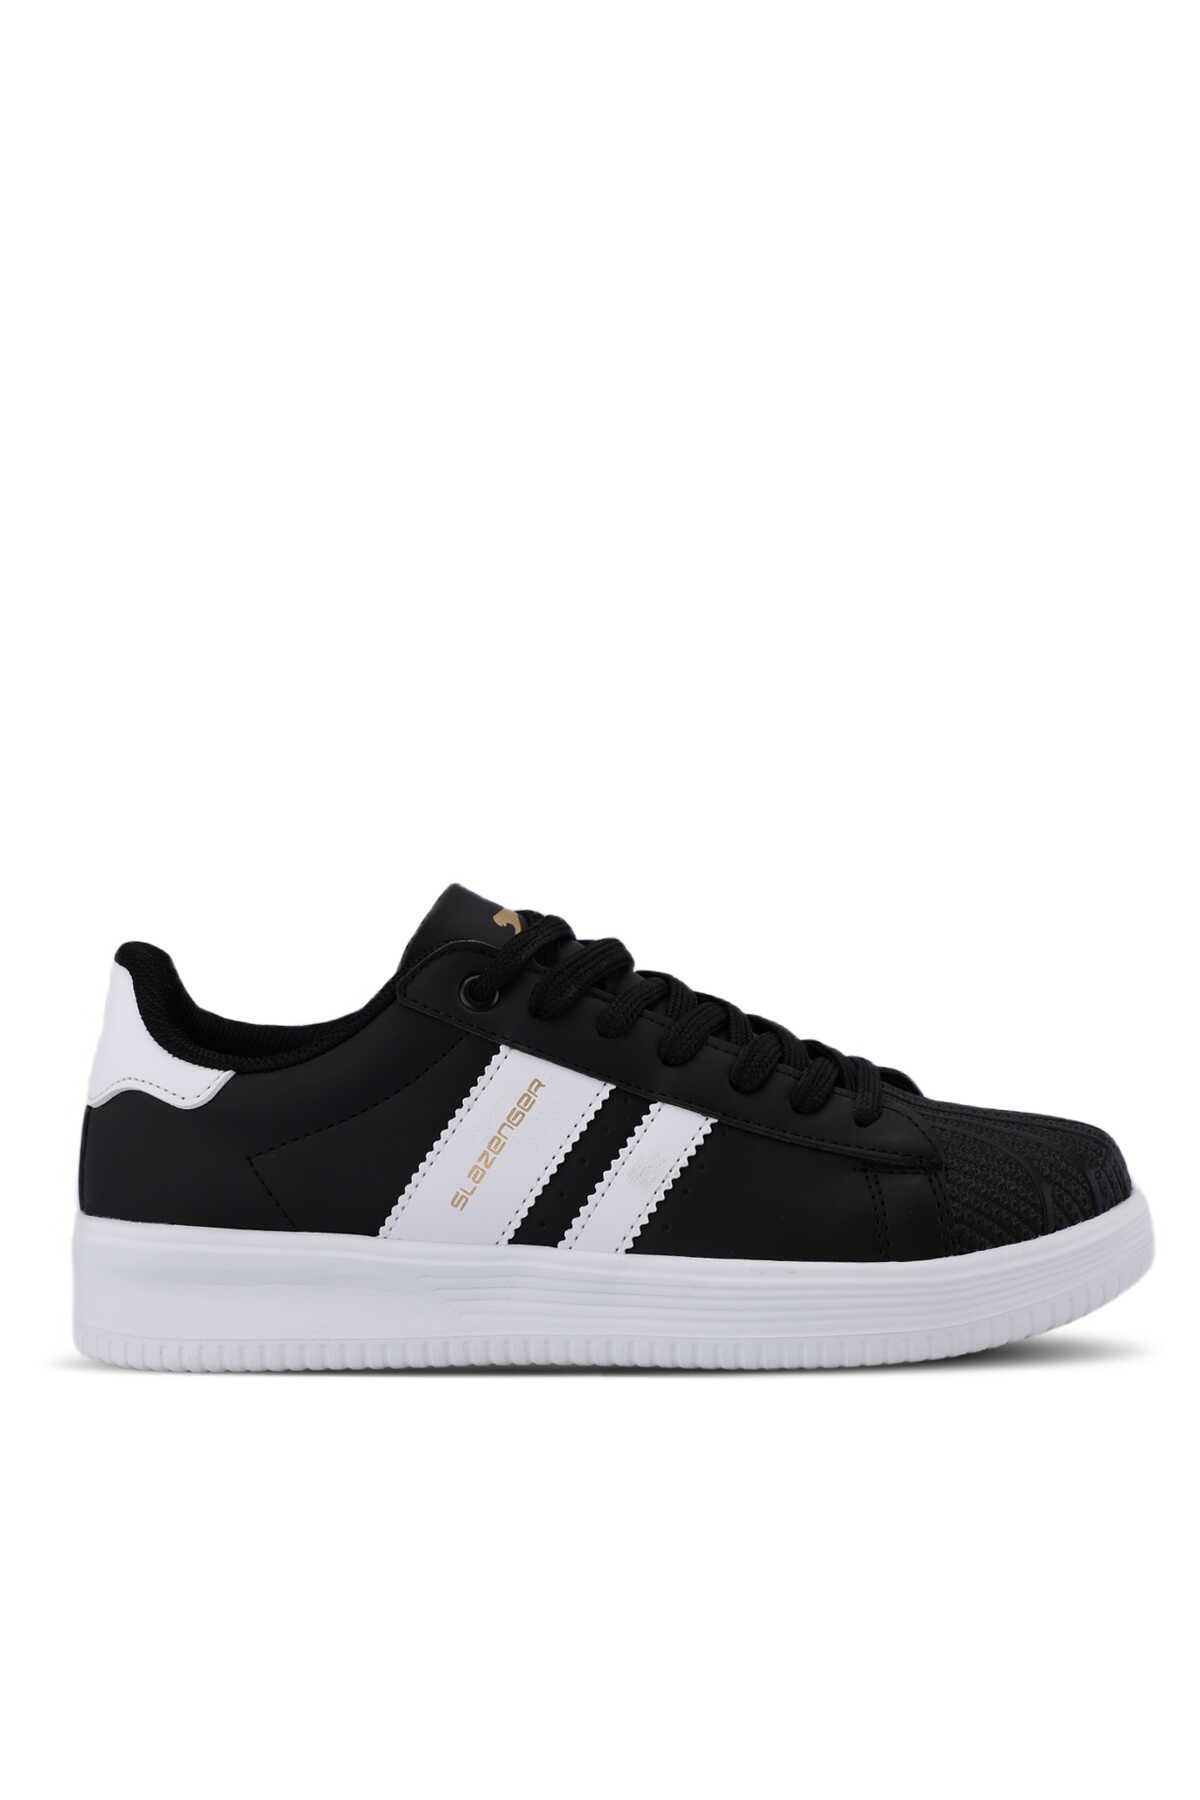 Slazenger - Slazenger ZENO Sneaker Kadın Ayakkabı Siyah / Beyaz